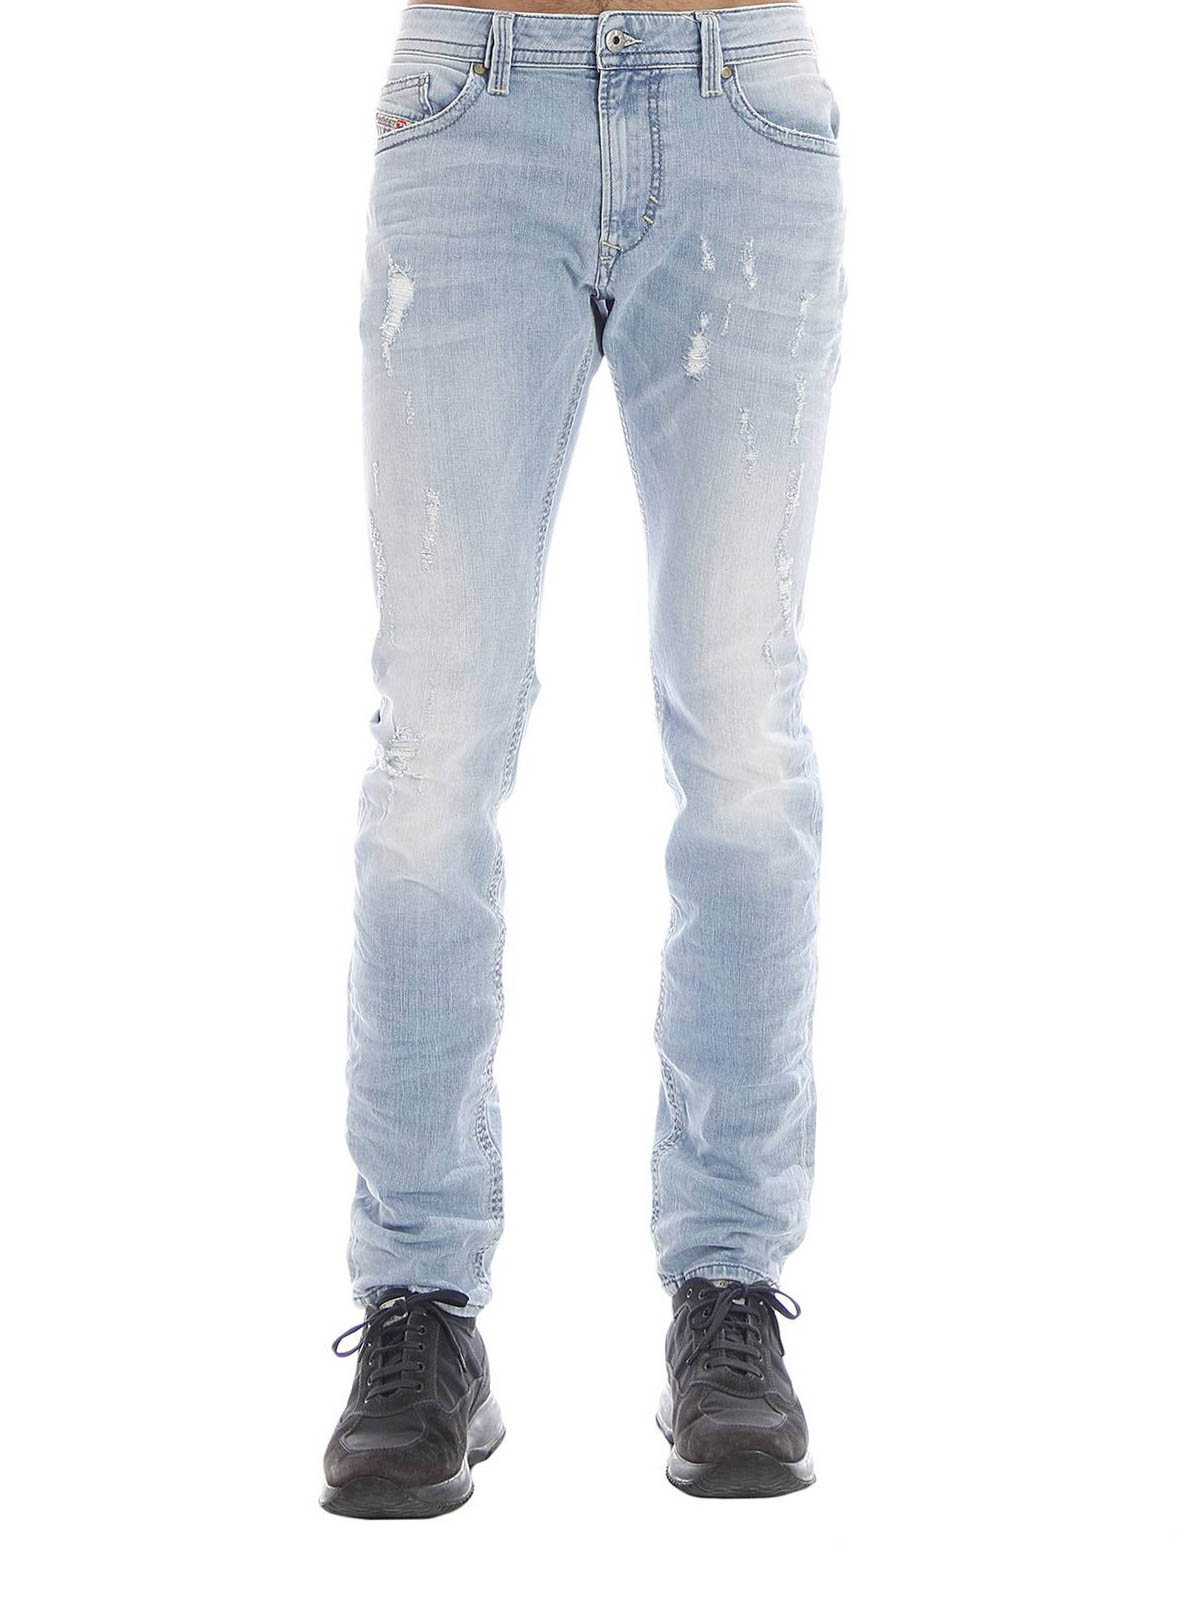 Seraph voorraad Uitvoeren Skinny jeans Diesel - Thavar skinny jeans - 00CKS1849E01 | iKRIX.com